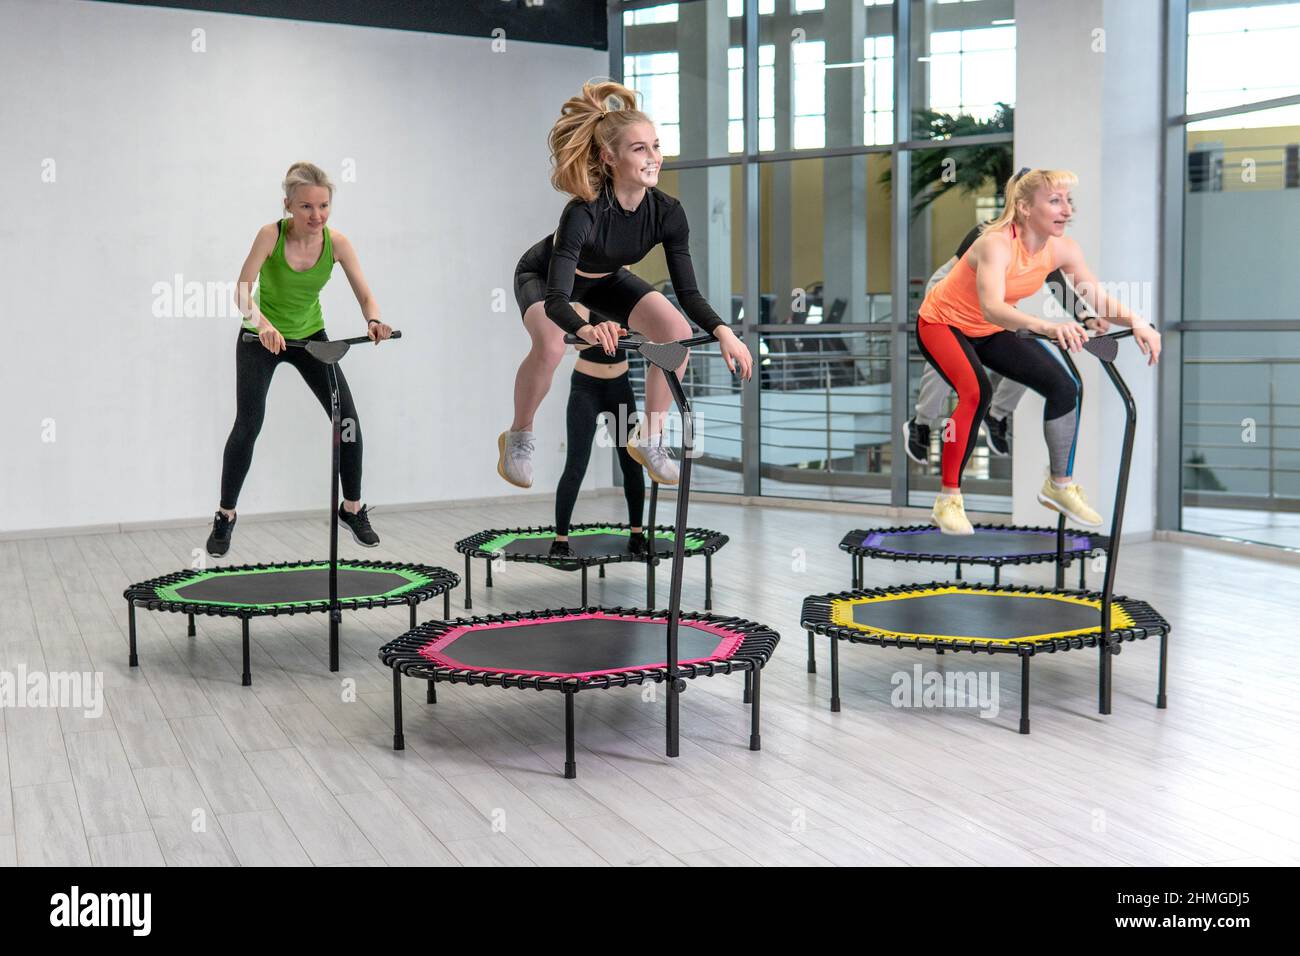 Trampolin für Fitness-Mädchen sind in Profisport, das Konzept eines gesunden  Lebensstils Jumpfing Trampolin Frau Fitness-Studio gesund, für engagiert  Stockfotografie - Alamy